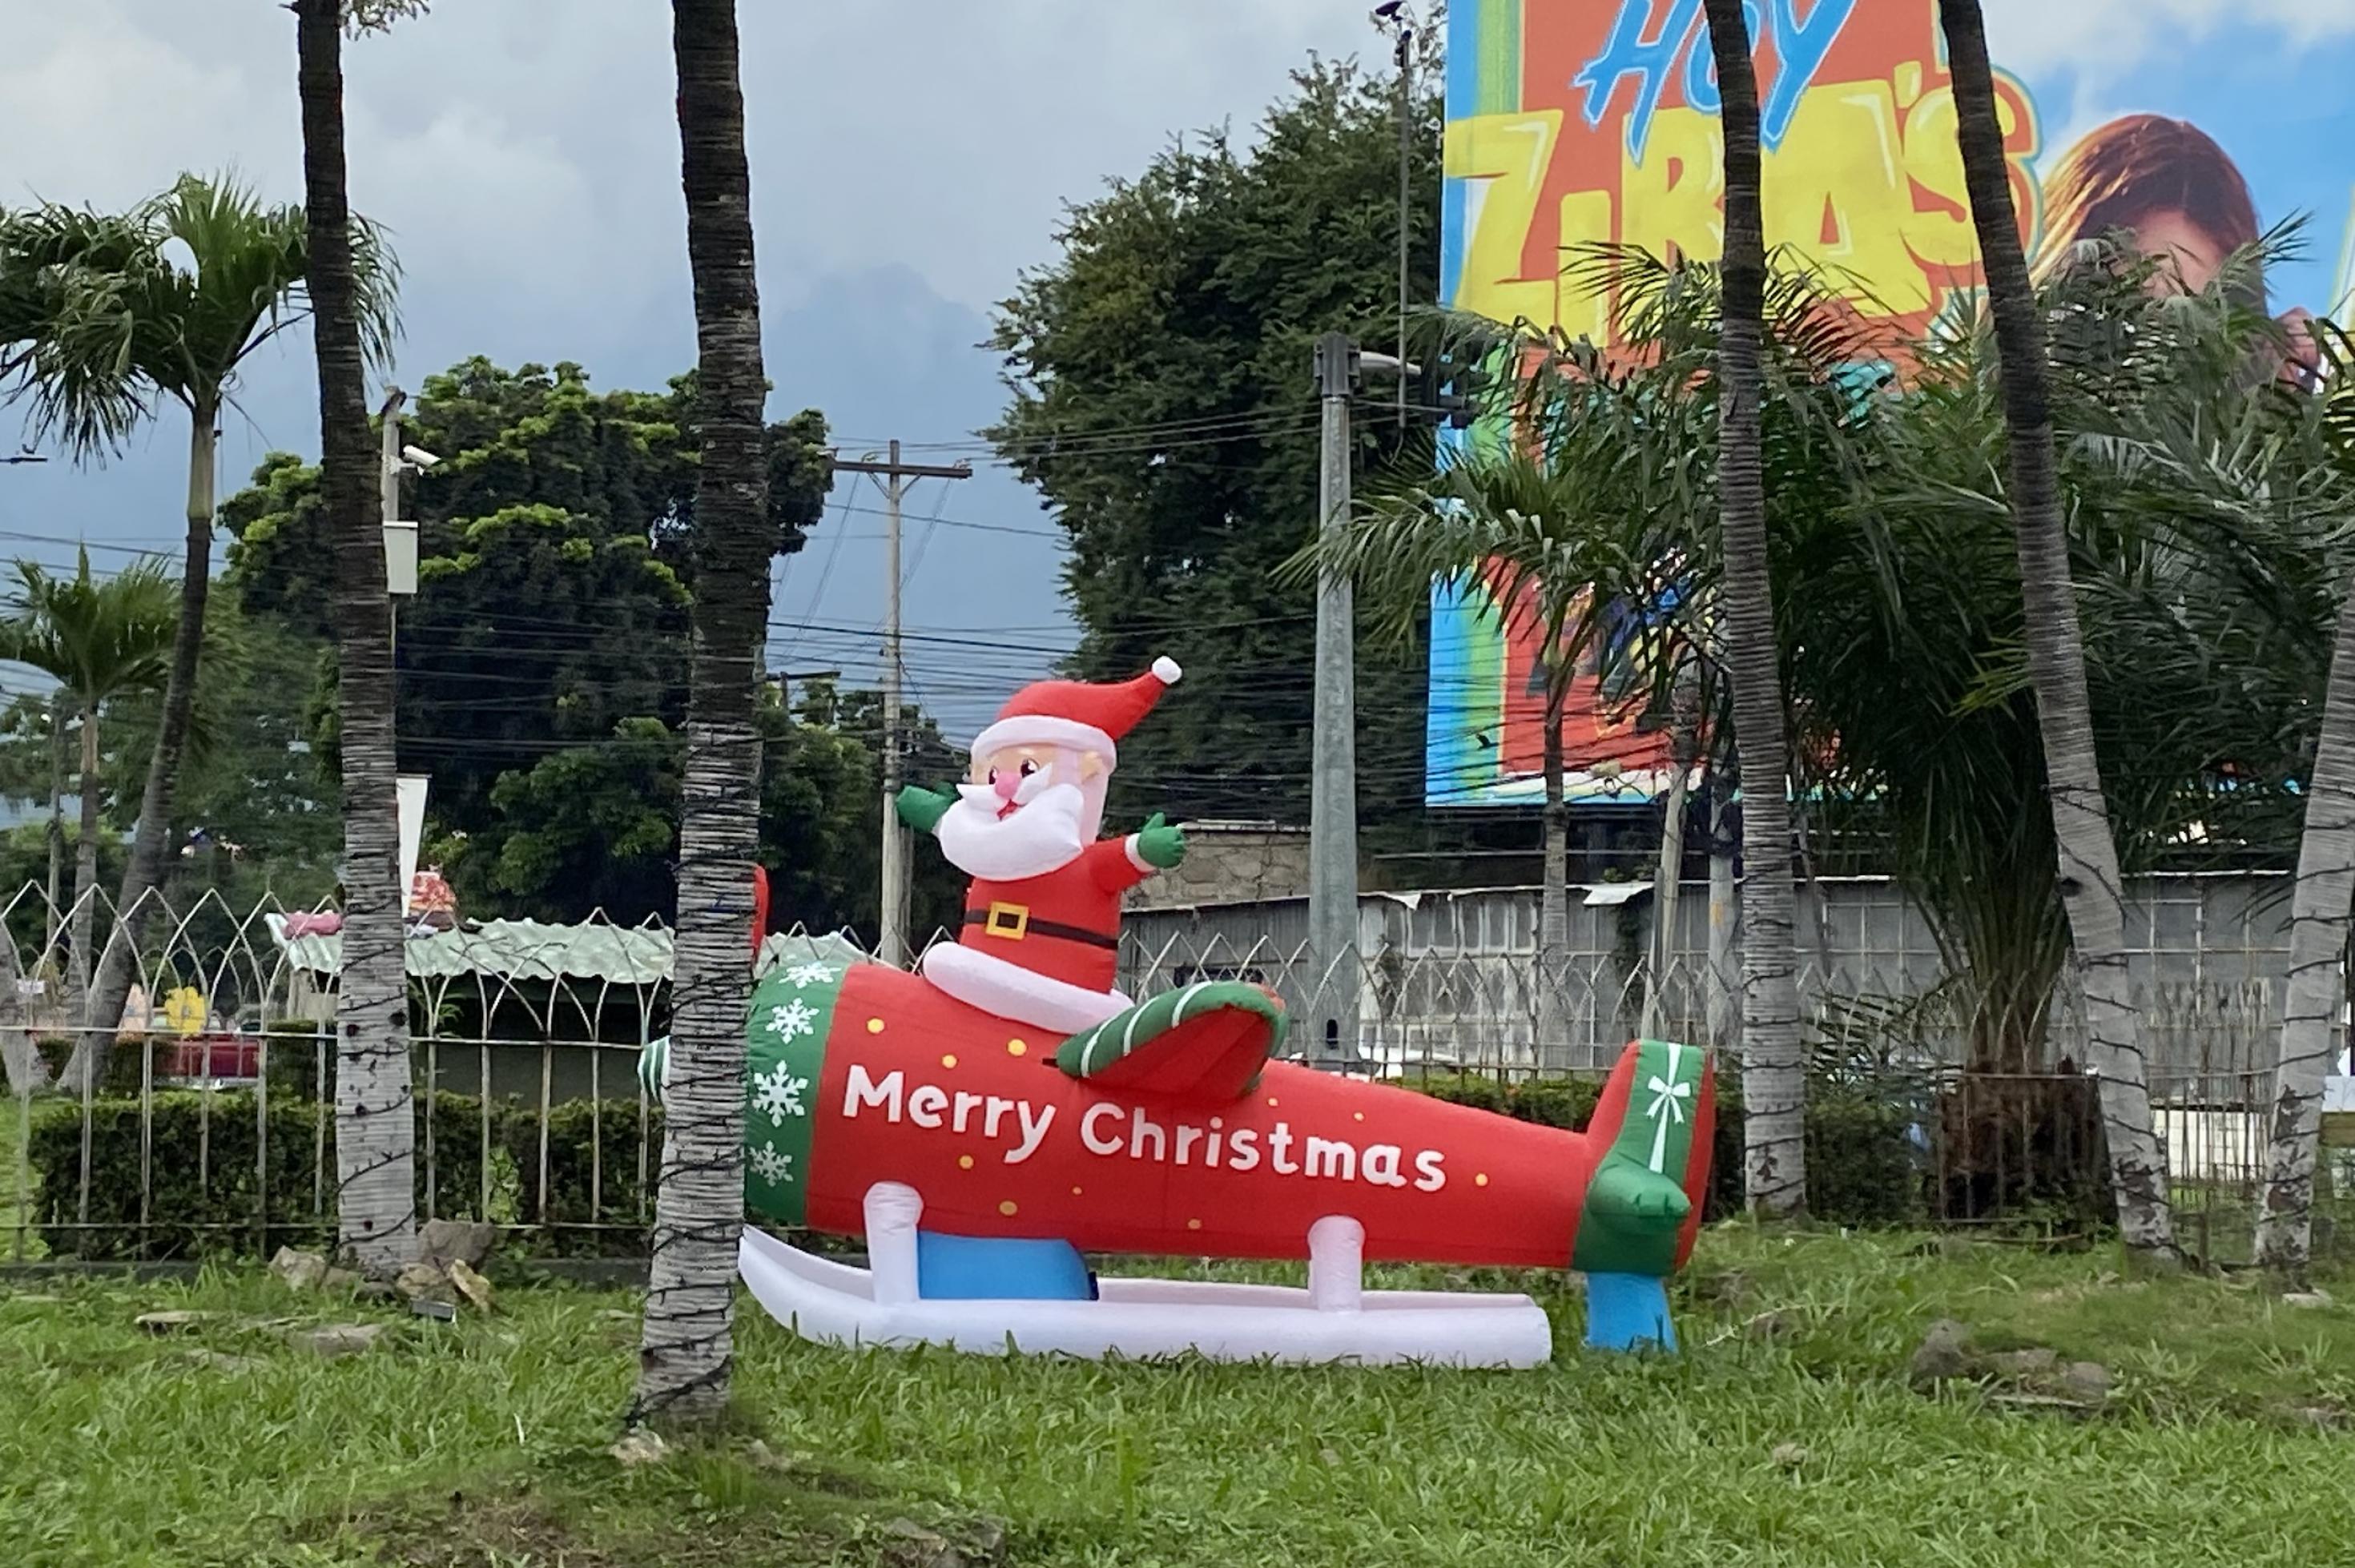 In einem Garten oder Park mit Palmen steht auf dem Rasen eine aufblasbarer Rakete mit Kufen. Auf dem Ding reitet mit ausgebreiteten Armen ein Gummiweihnachtsmann. Über sein Gefährt steht quer geschrieben: Merry Christmas.